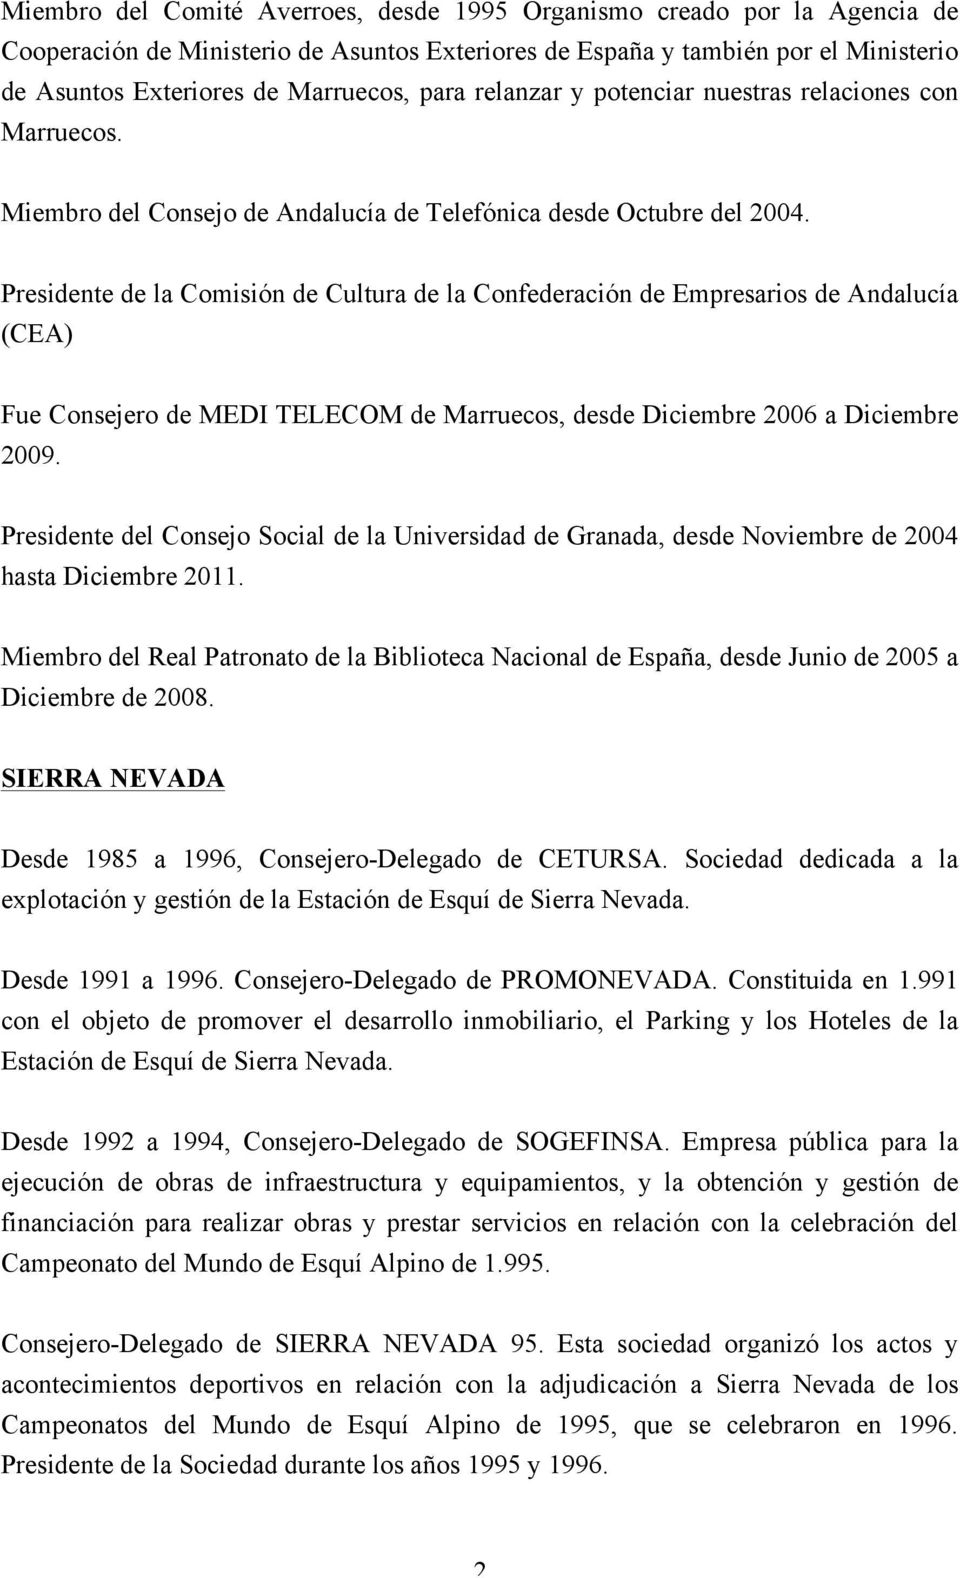 Presidente de la Comisión de Cultura de la Confederación de Empresarios de Andalucía (CEA) Fue Consejero de MEDI TELECOM de Marruecos, desde Diciembre 2006 a Diciembre 2009.